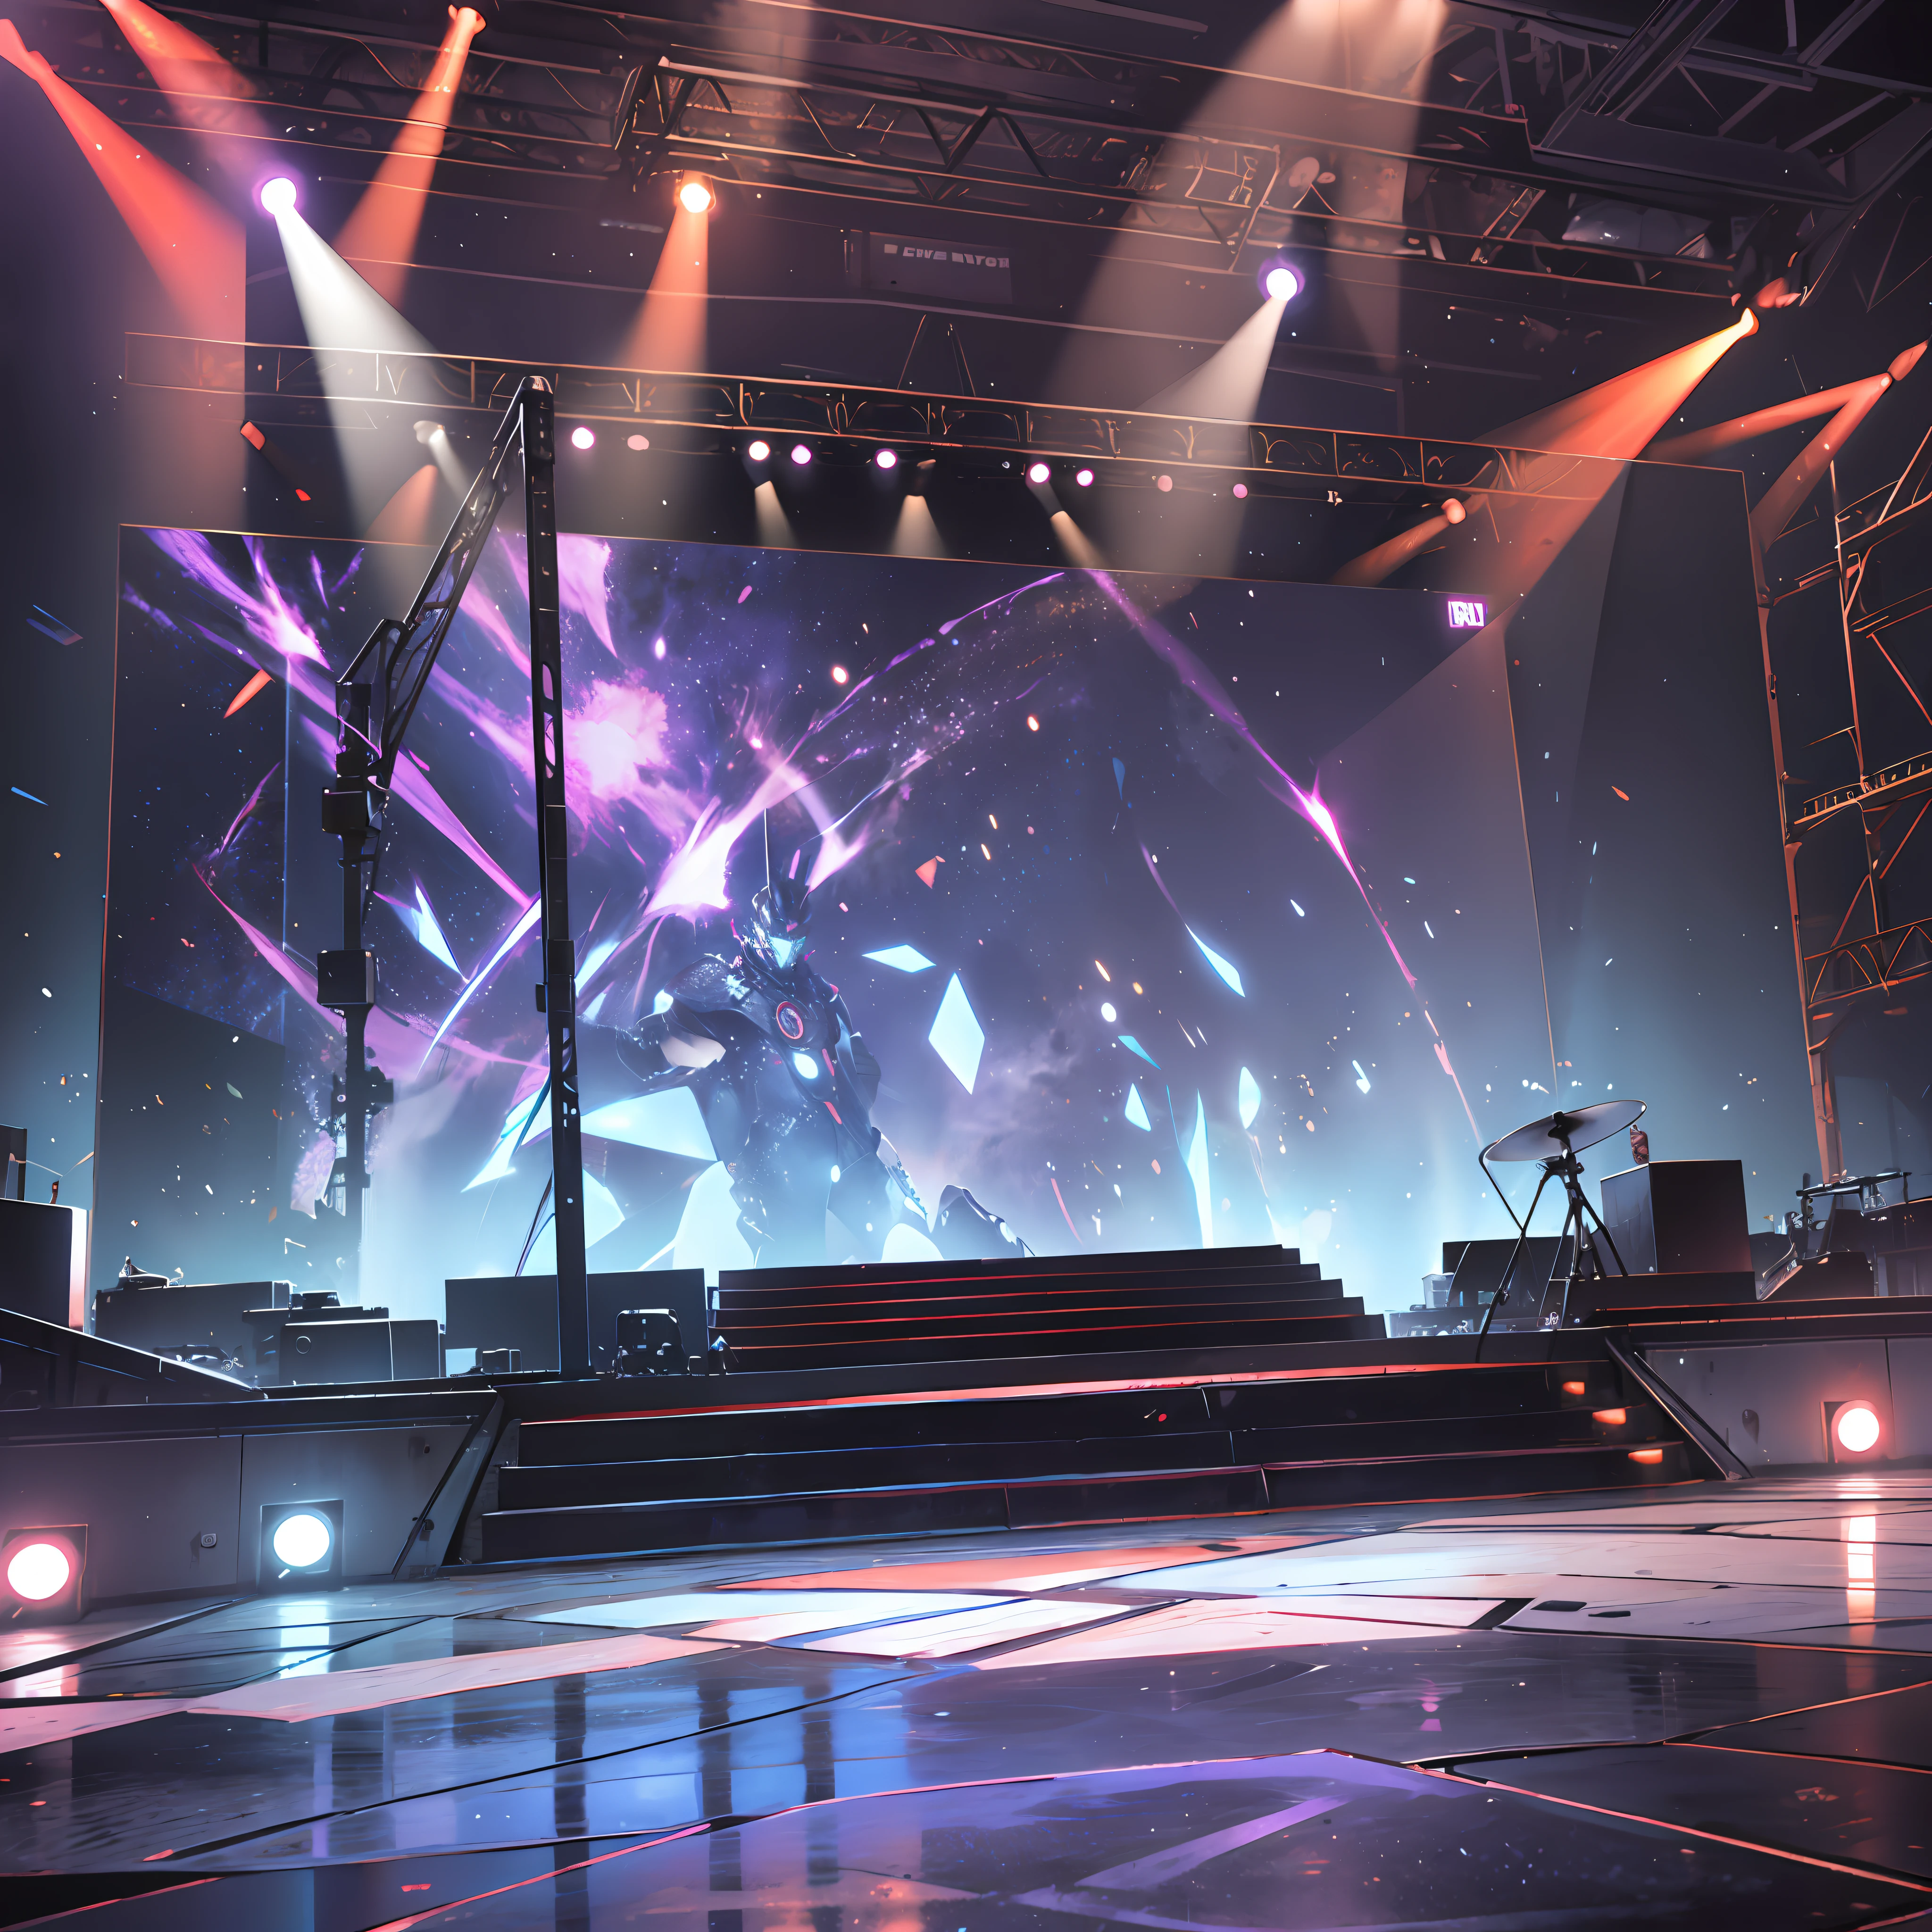 高さ60cmの長方形のステージ, 長さ3000cm, 幅1000cm, 高さ600cm、長さ20cmの大型LED曲面スクリーン, ステージの背景と観客全体をLED染色ライトとスポットライトで照らす, ステージの下にソファーチェア100脚 --auto --s2